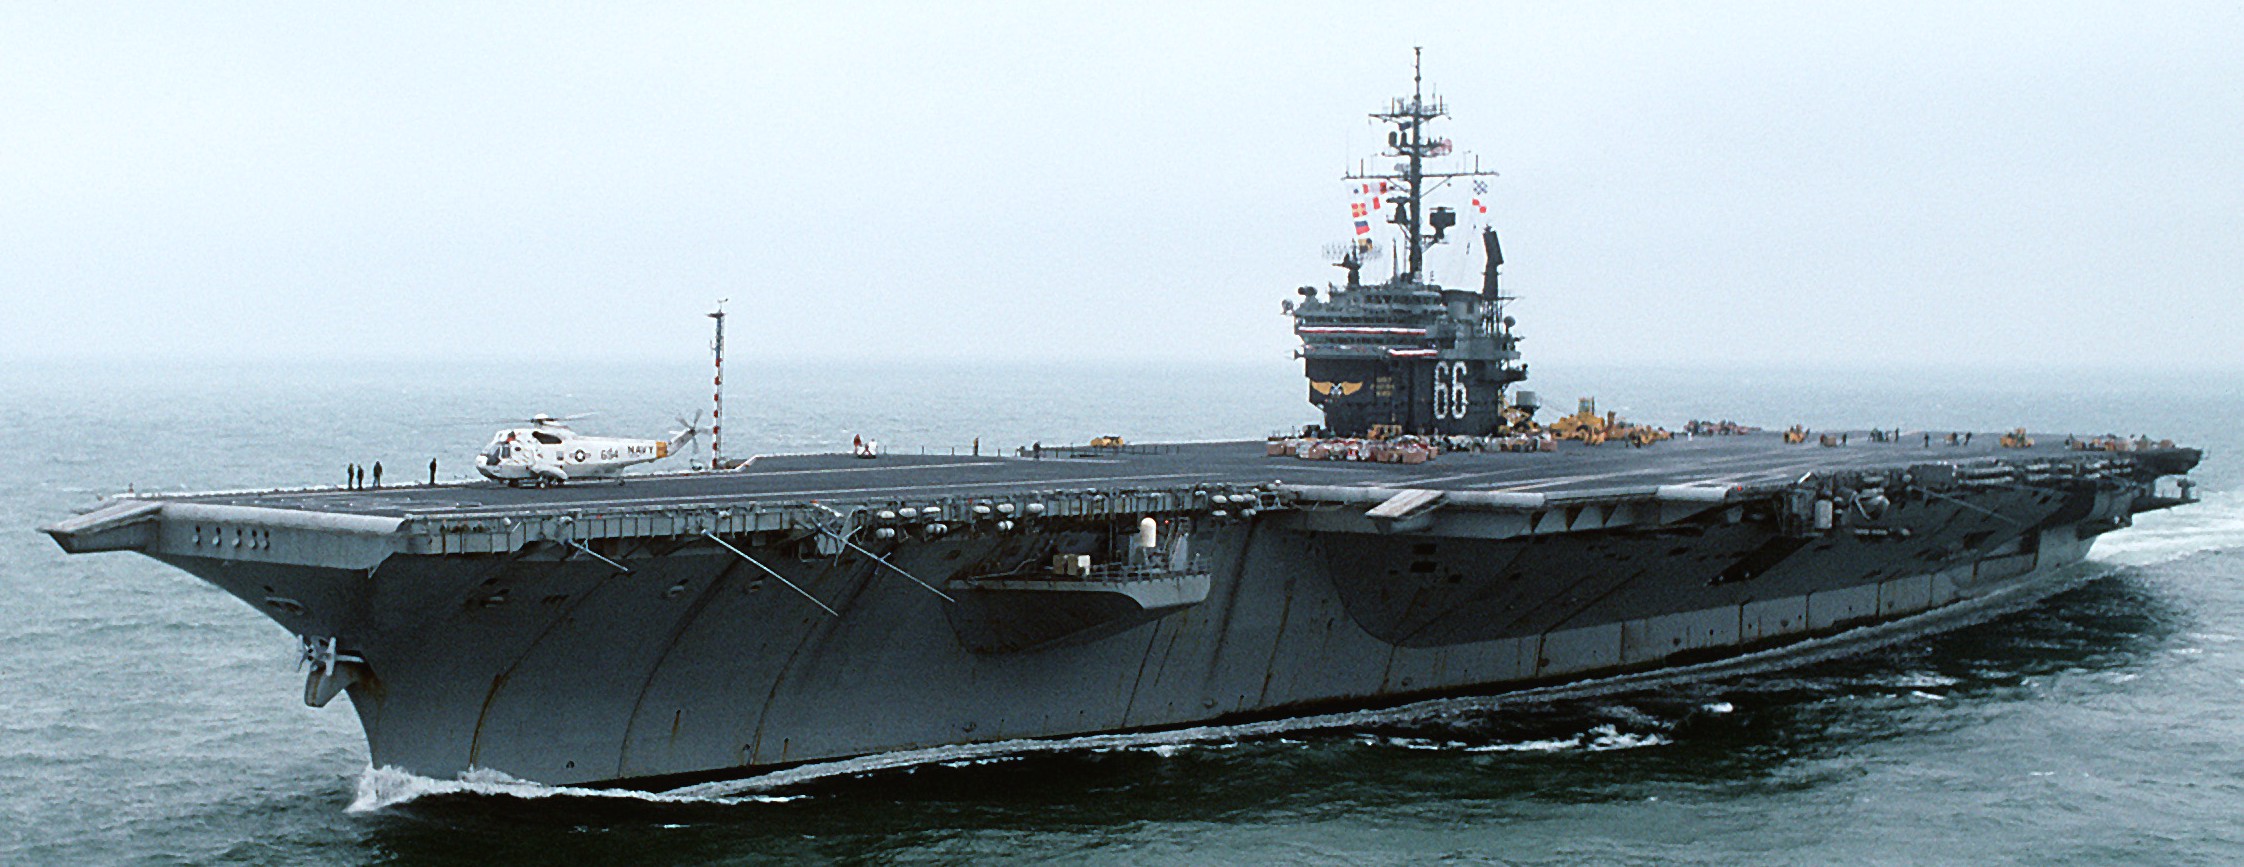 cv-66 uss america kitty hawk class aircraft carrier us navy 101